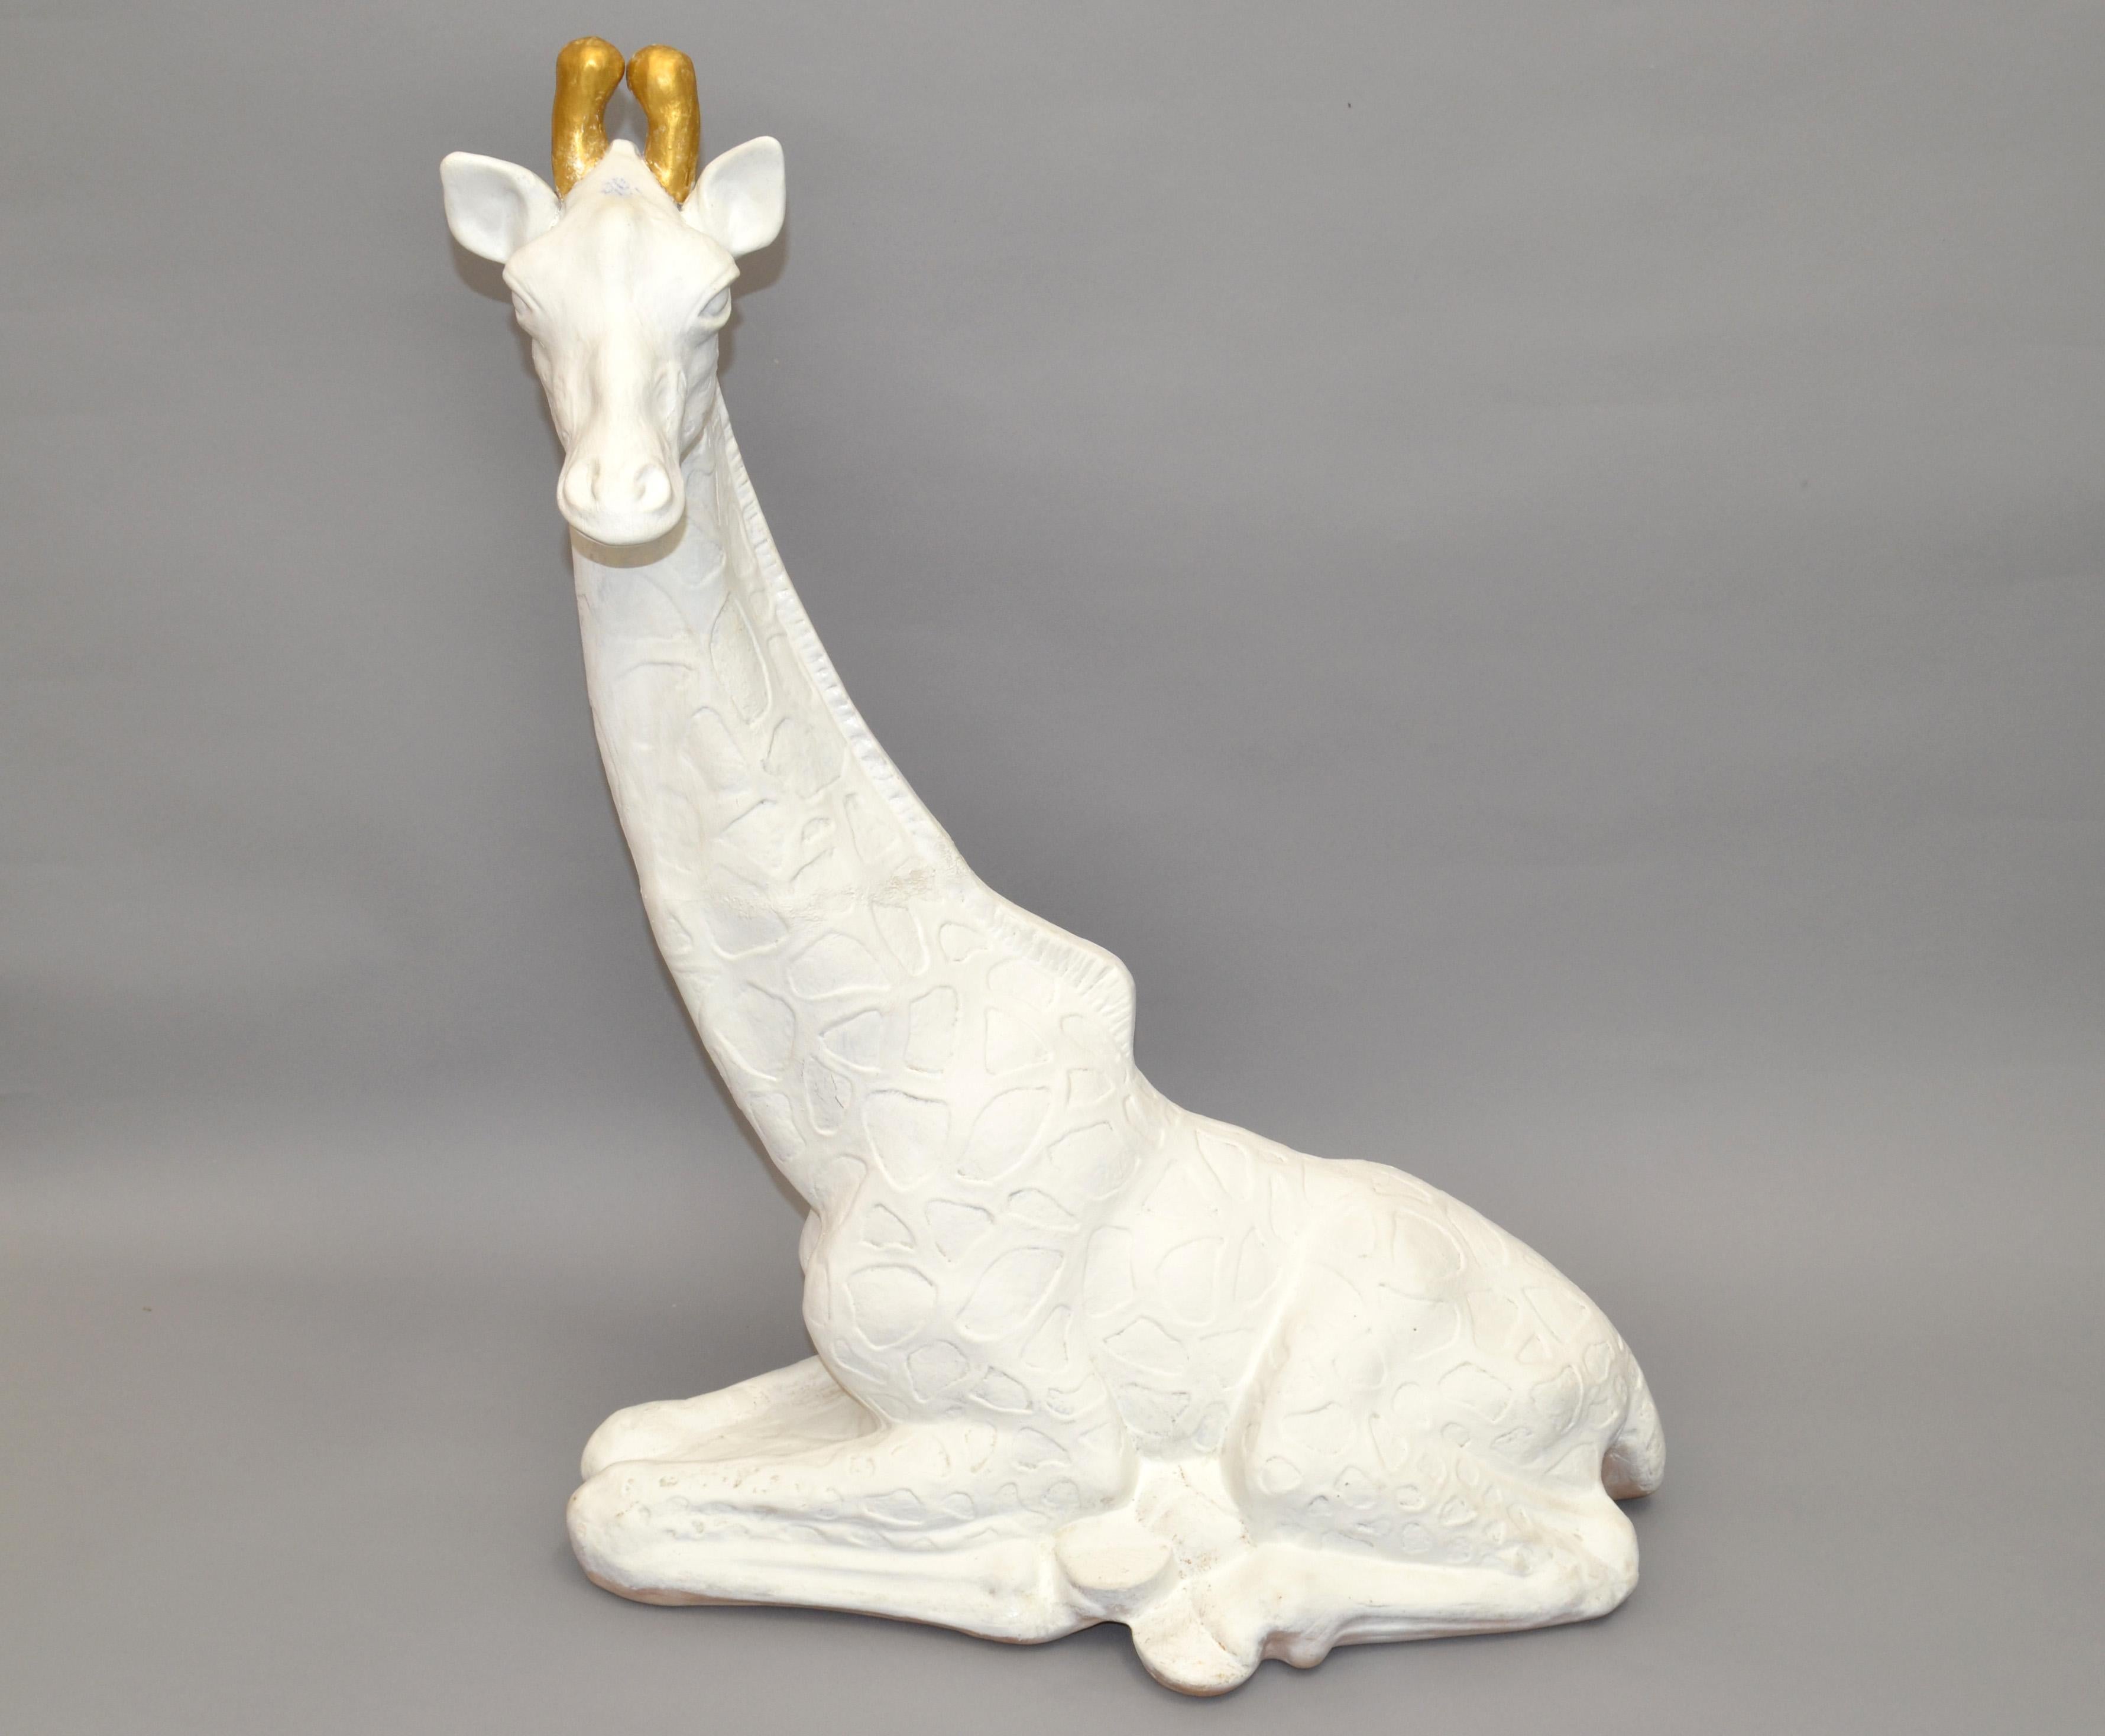 Girafe au repos en plâtre avec une finition blanche et des osselets dorés (défenses en forme de corne), une sculpture animale étonnante.
Fabriqué à la main dans les années 1980 et originaire d'Amérique.
Il s'agit d'une magnifique pièce d'art